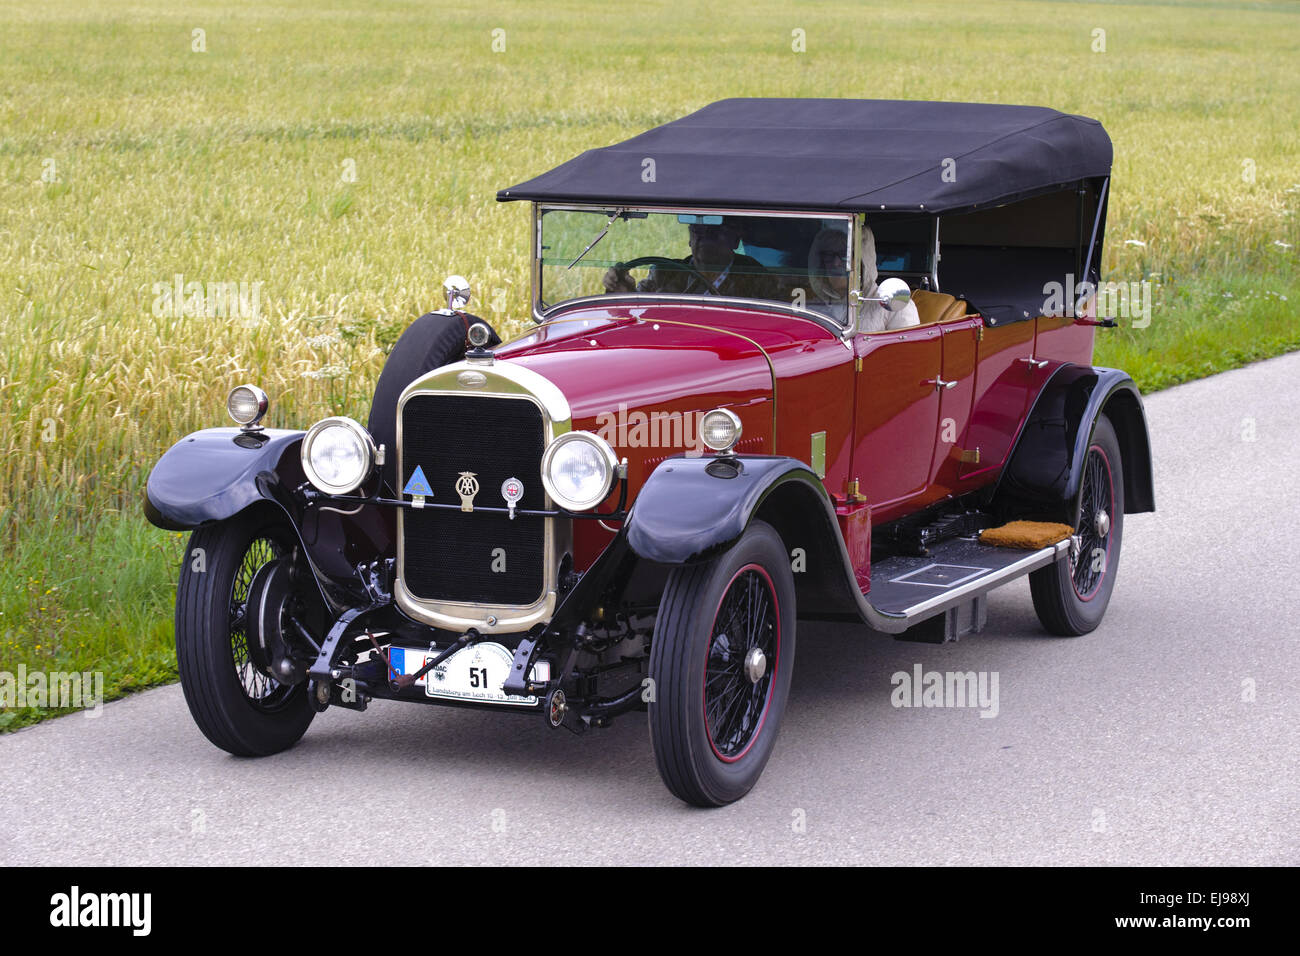 veteran car Sunbeam, built at year 1926 Stock Photo